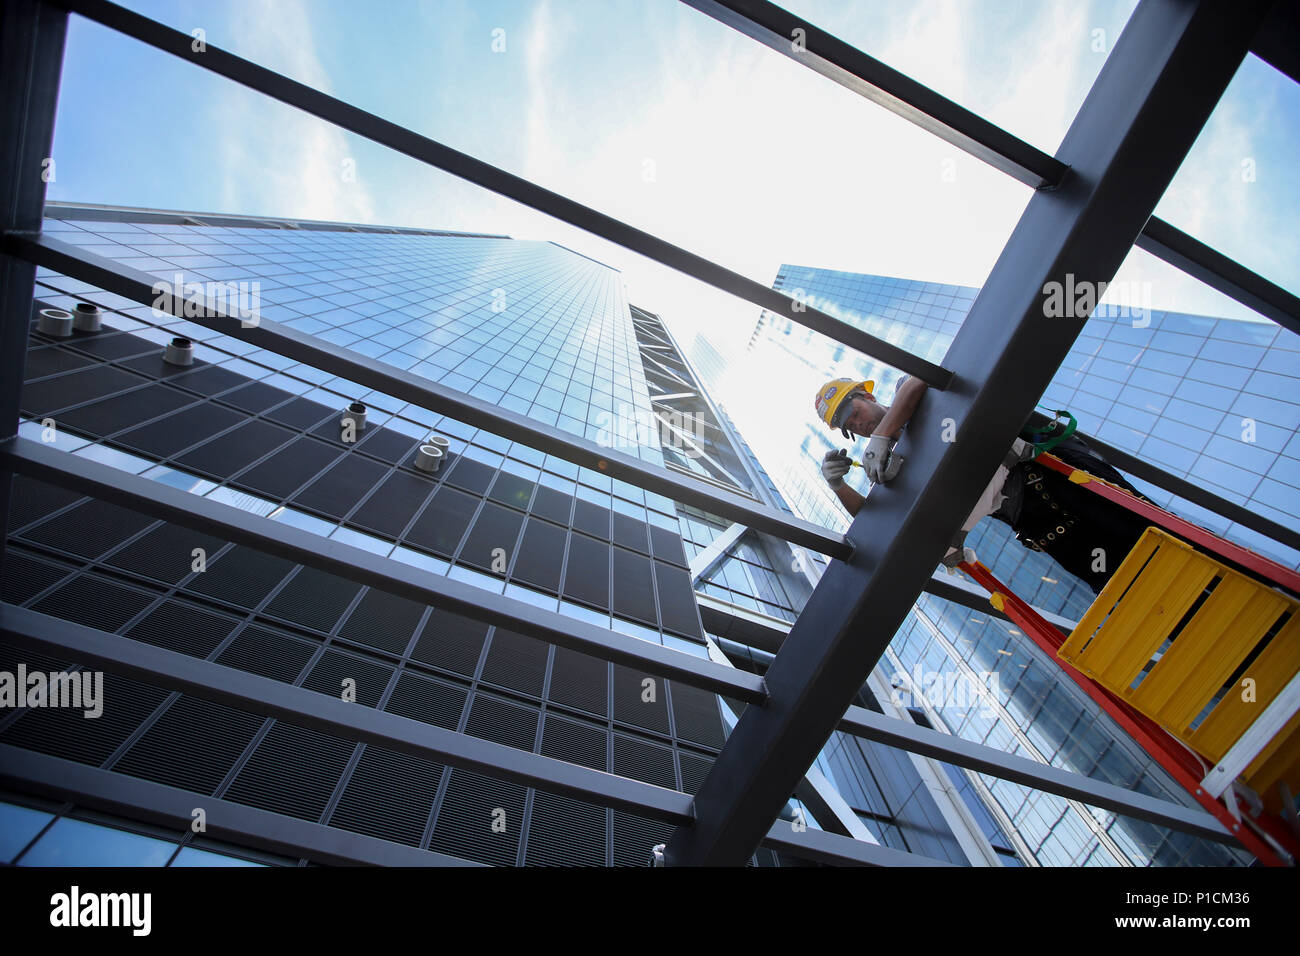 New York, USA. 11 Juin, 2018. Un homme travaille à la plate-forme de 3 World Trade Center dans le lower Manhattan, New York, États-Unis, le 11 juin 2018. Les 80 étages, 329 mètres de haut 3 World Trade Center a été officiellement inauguré ici lundi. L'immeuble de bureaux devient la cinquième plus haute tour de la ville de New York. Credit : Wang Ying/Xinhua/Alamy Live News Banque D'Images